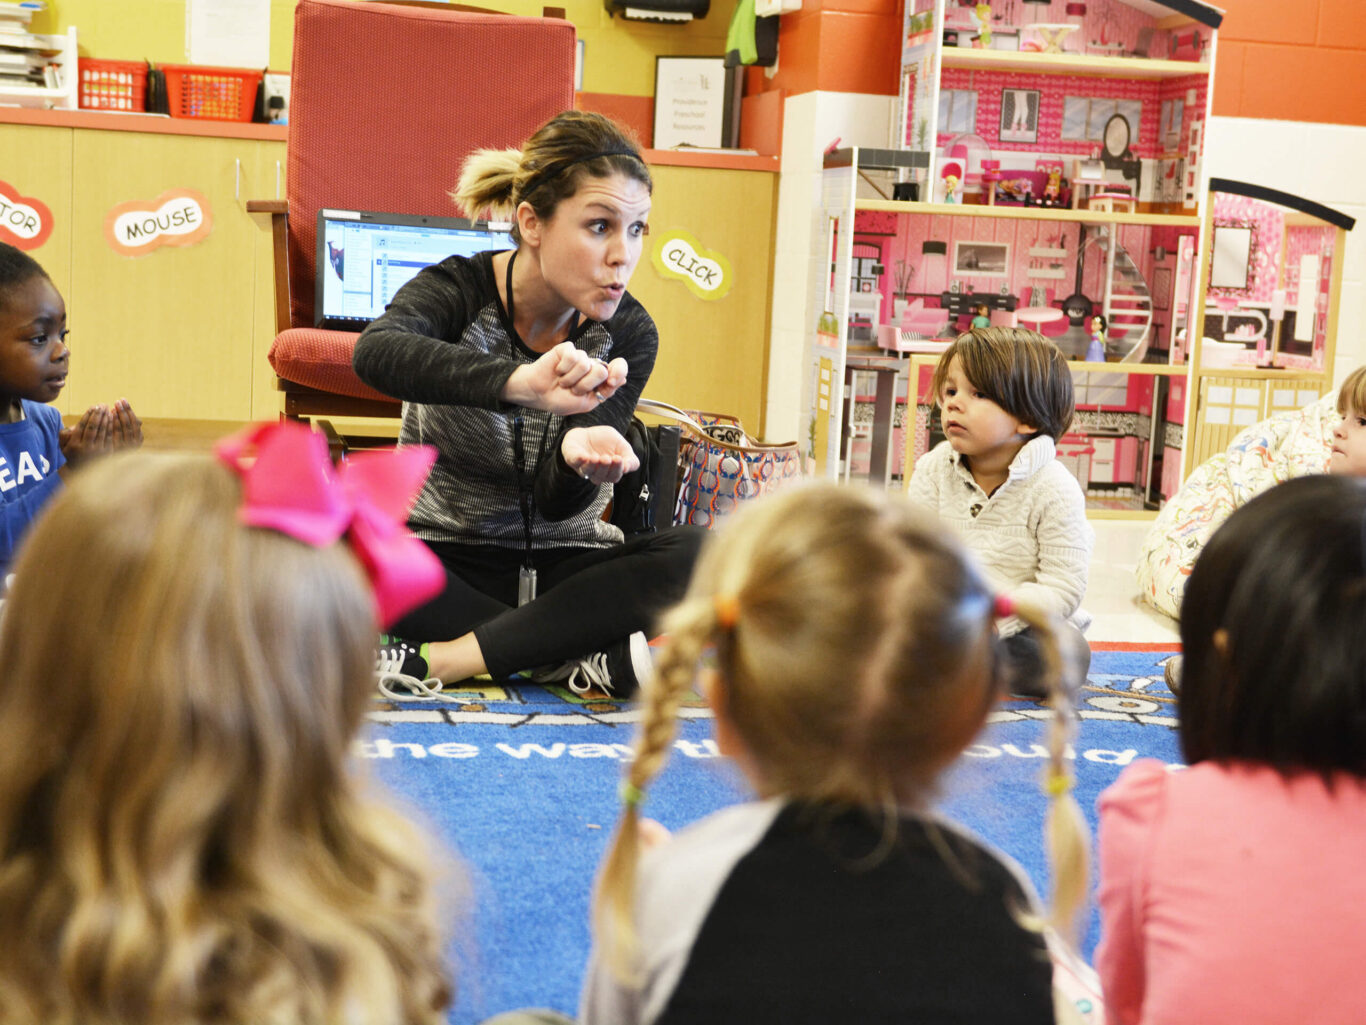 A preschool teacher is instructing a group of children in a classroom.